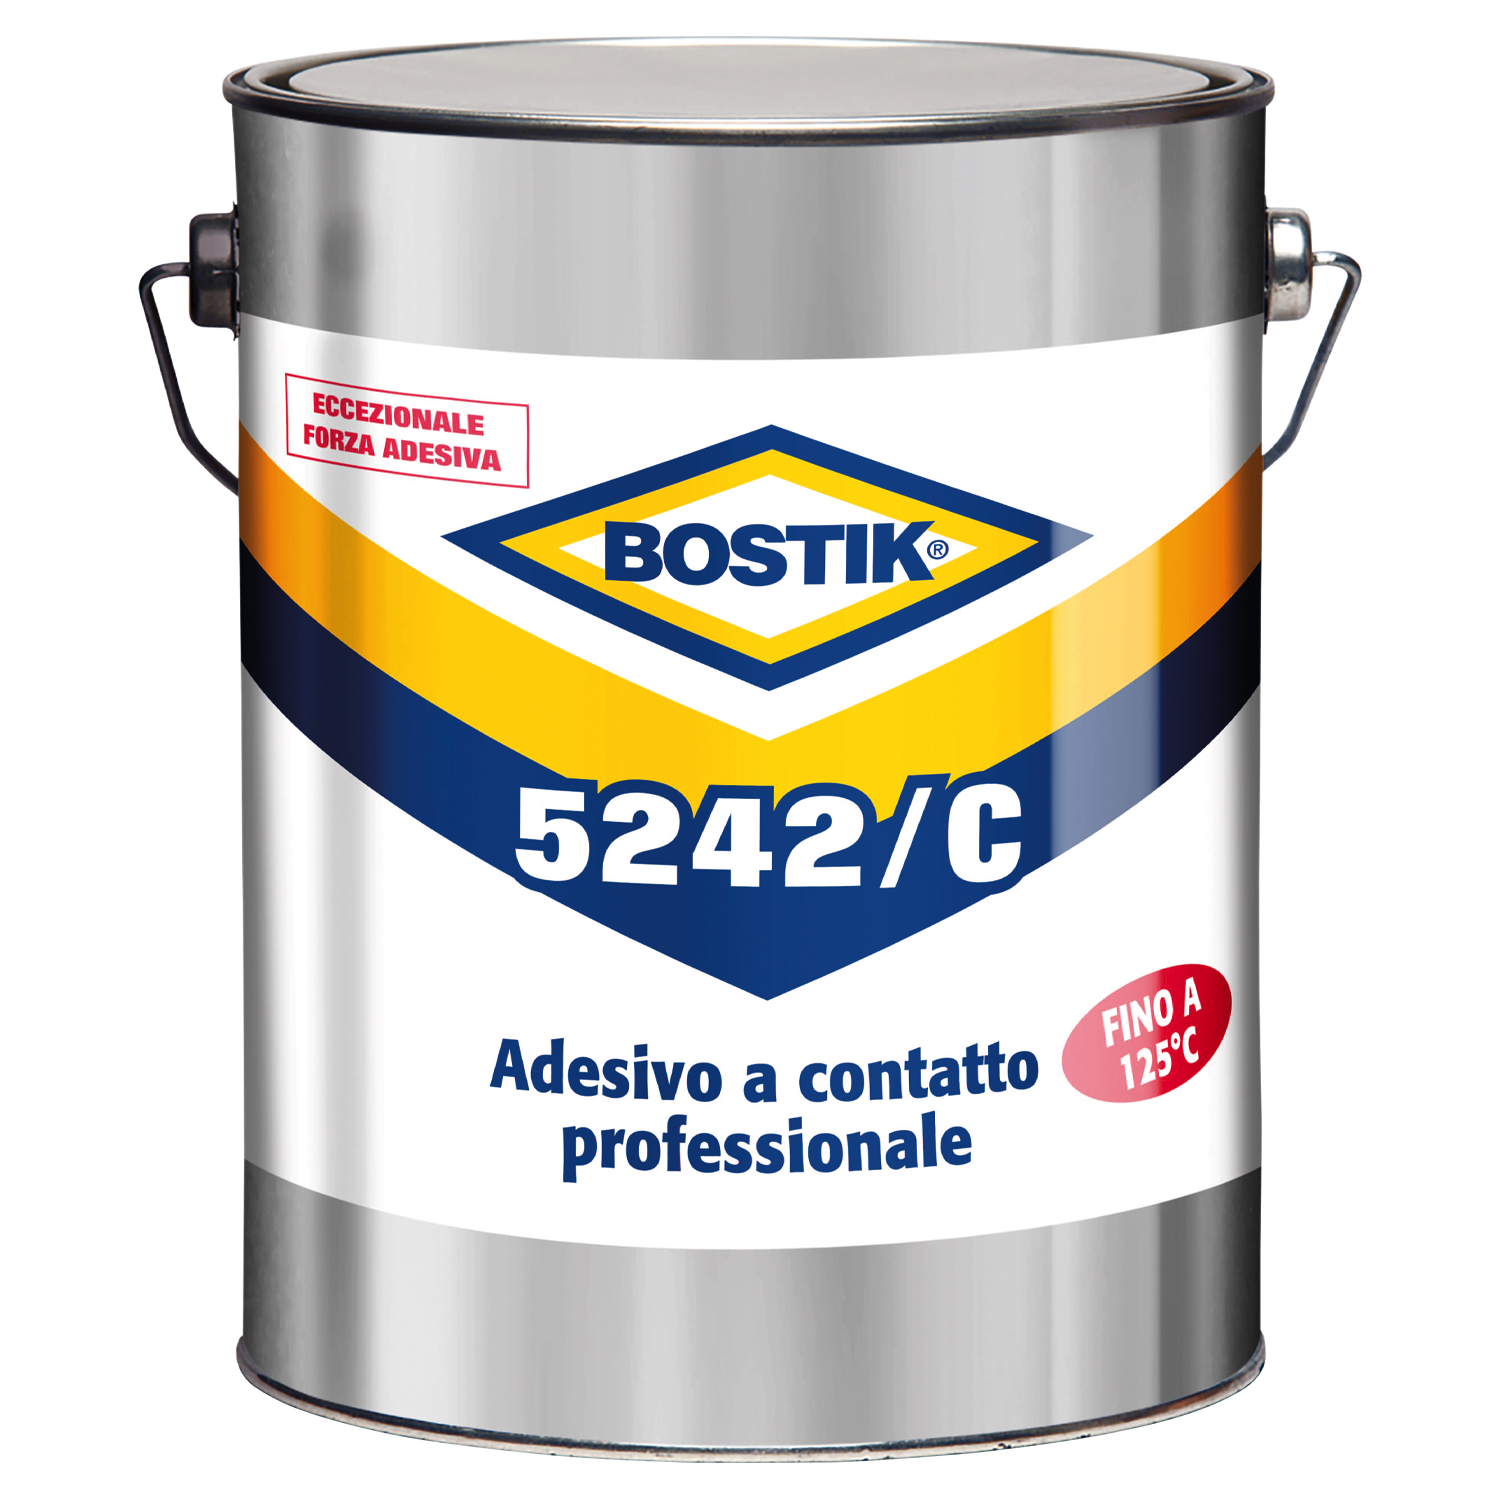 Bostik Plastica Rapido Mixer  Bostik il professionista di adesivi e  sigillanti